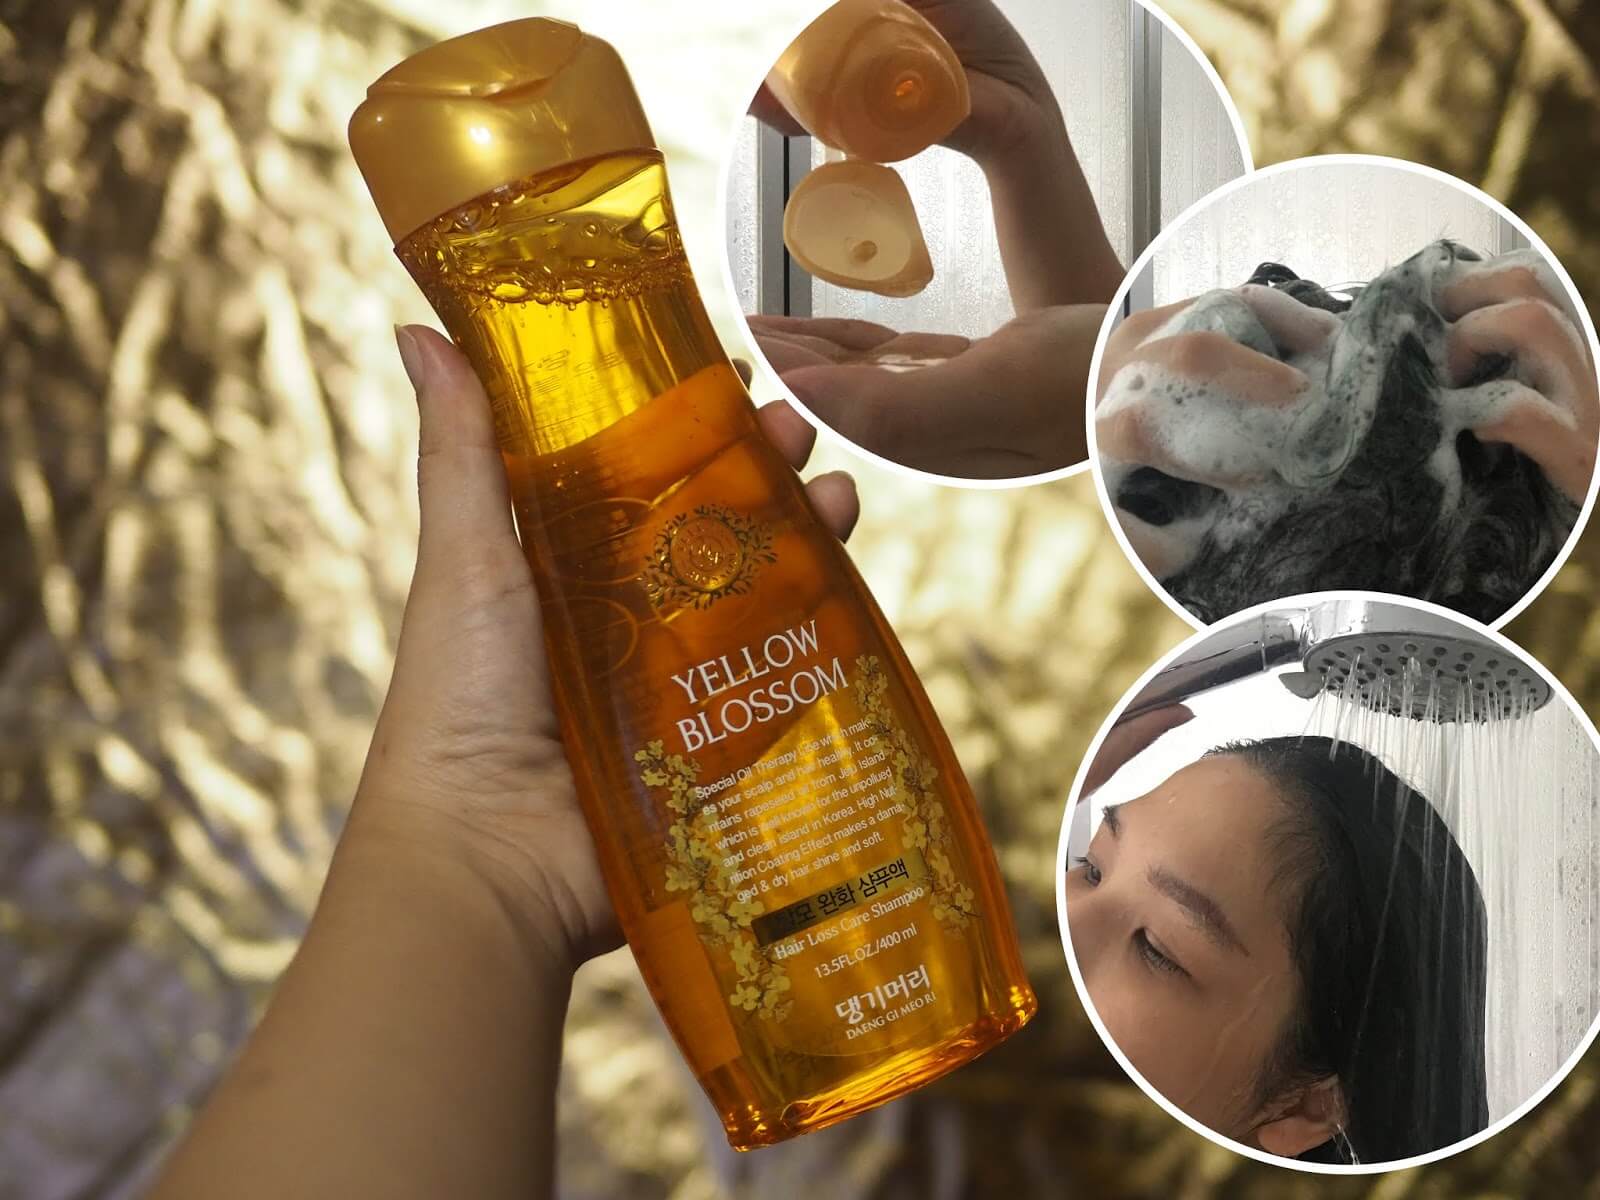 Daeng gi meo ri Yellow Blossom Anti-Hair Loss Shampoo 400 ml. แชมพูสีเหลืองทองอุดมไปด้วยสารอาหารที่สกัดจากดอกยูแซ เกาะเซจู และสมุนไพรกว่า 15 ชนิด   ช่วยบำรุงหนังศรีษะให้แข็งแรง เปลี่ยนผมแห้งเสียให้มีชีวิตชีวา คืนผมสุขภาพดี หนา นุ่ม แข็งแรง